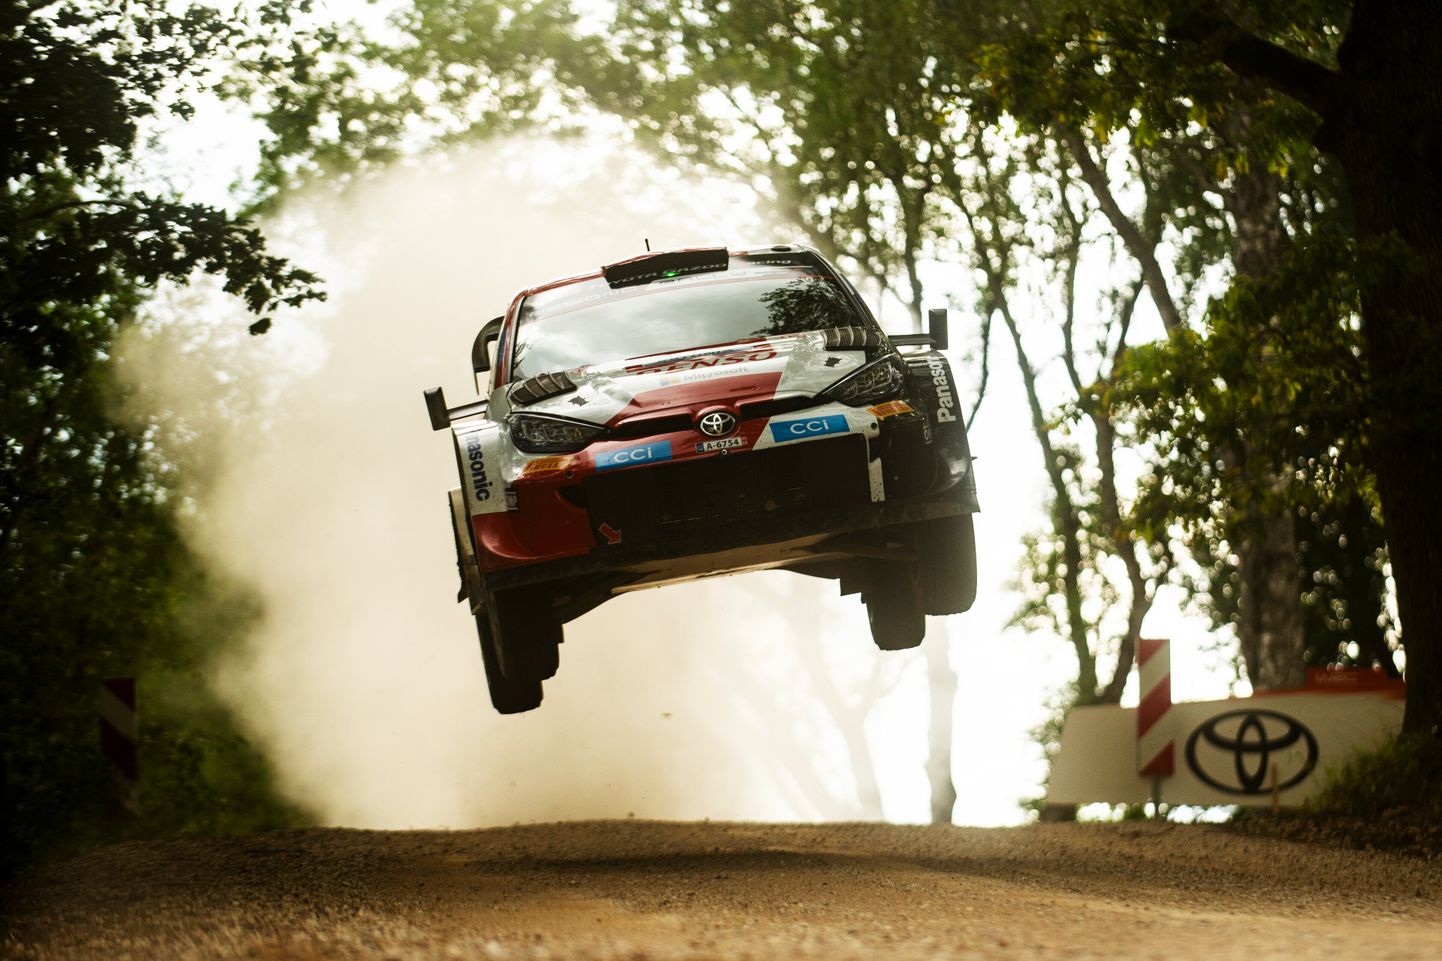 Kõige uuem tulija MM-sarjas on Toyota, mis liitus WRC-klassiga 2017. aastal.